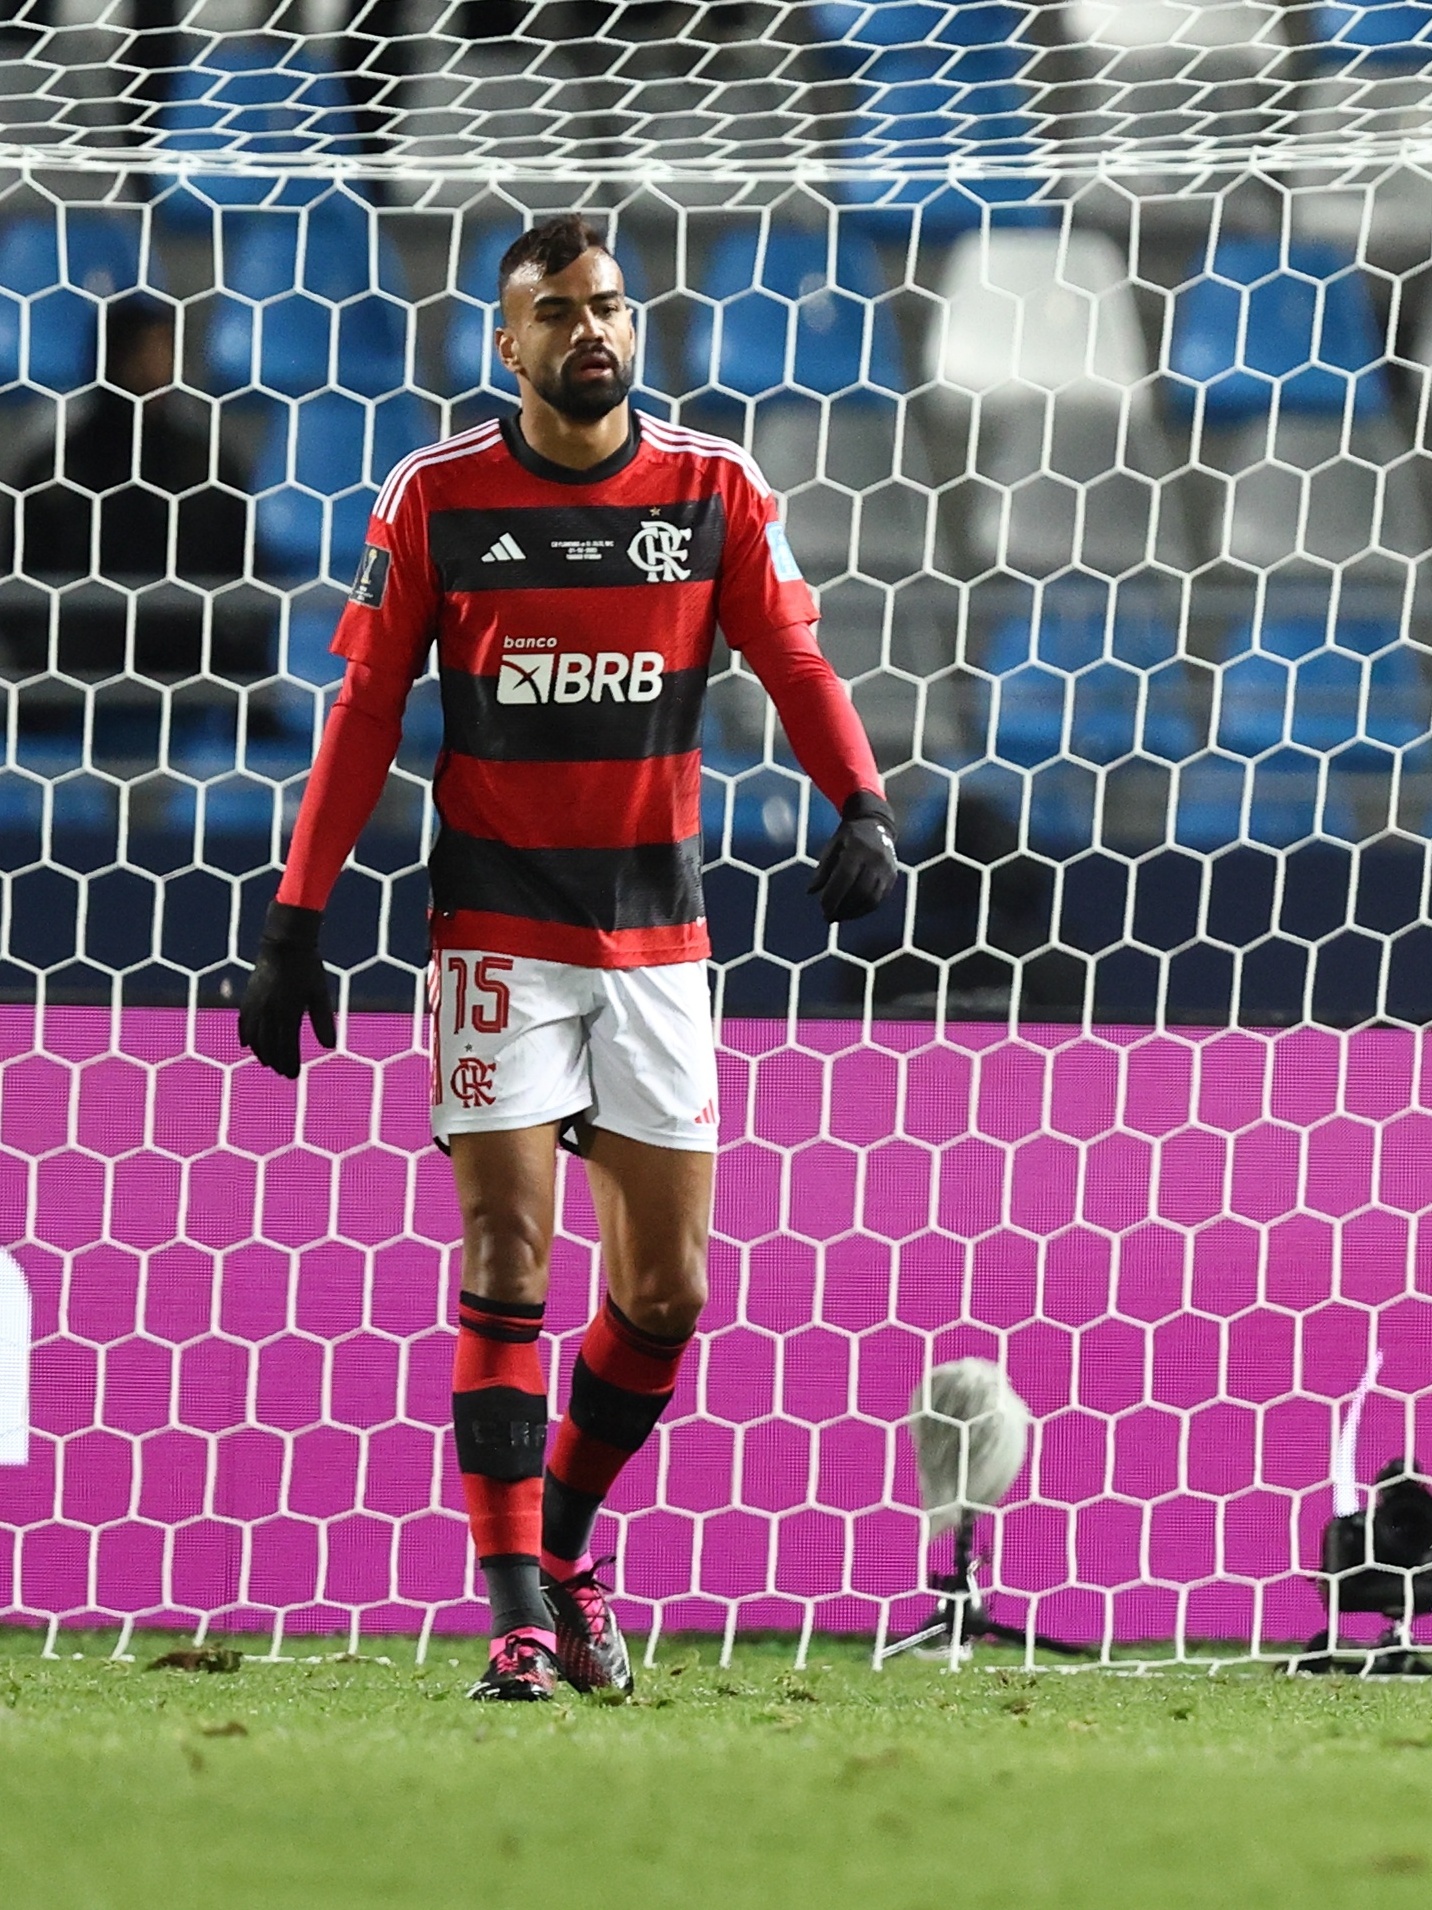 Vexame no Marrocos: o jogo entre Flamengo x Al Hilal em imagens – LANCE!